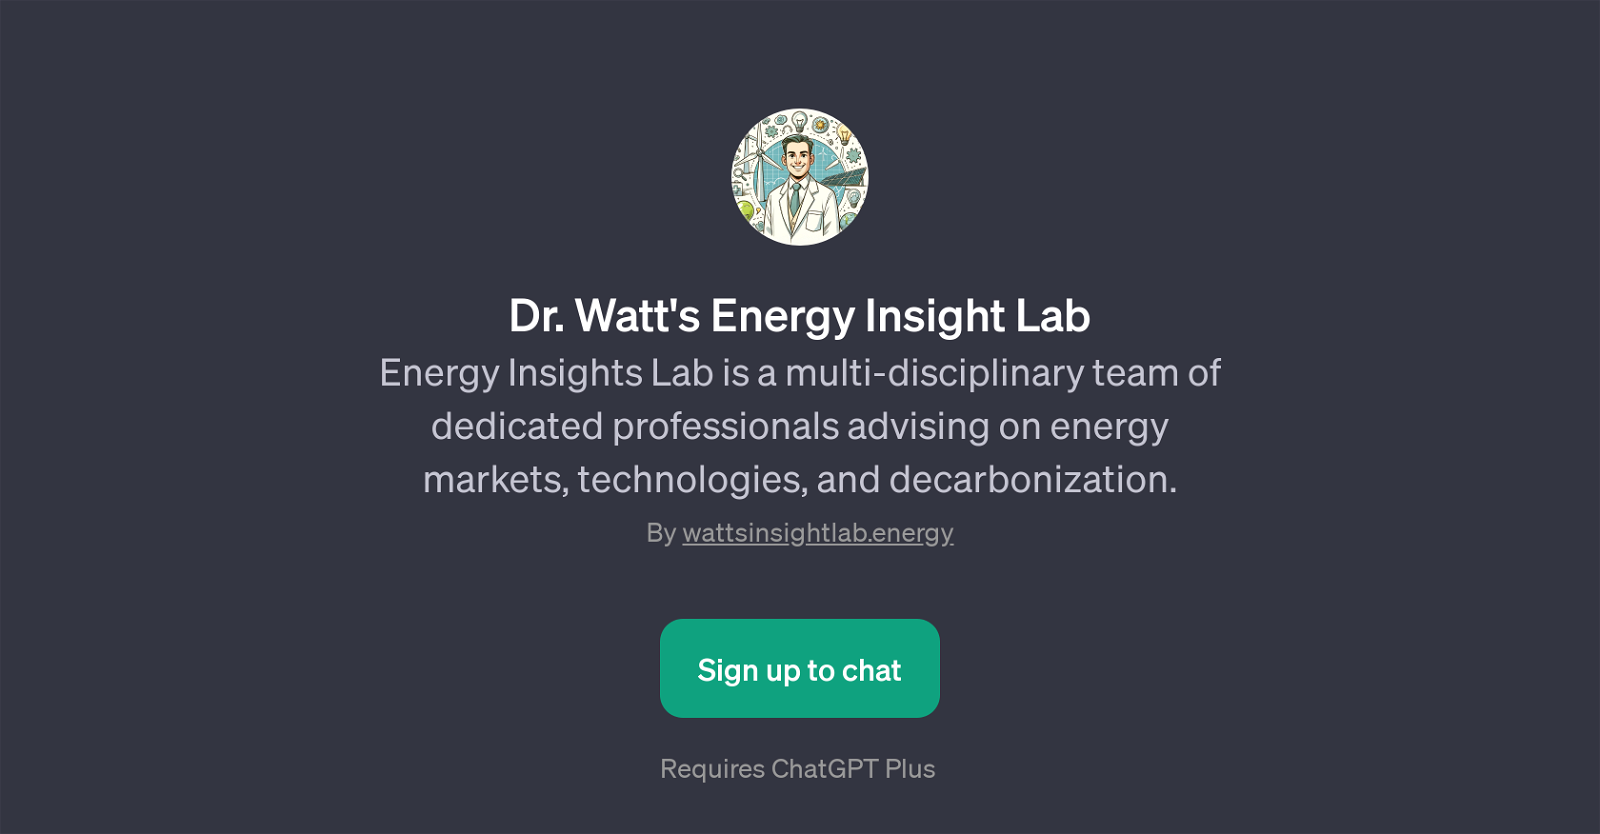 Dr. Watt's Energy Insight Lab website